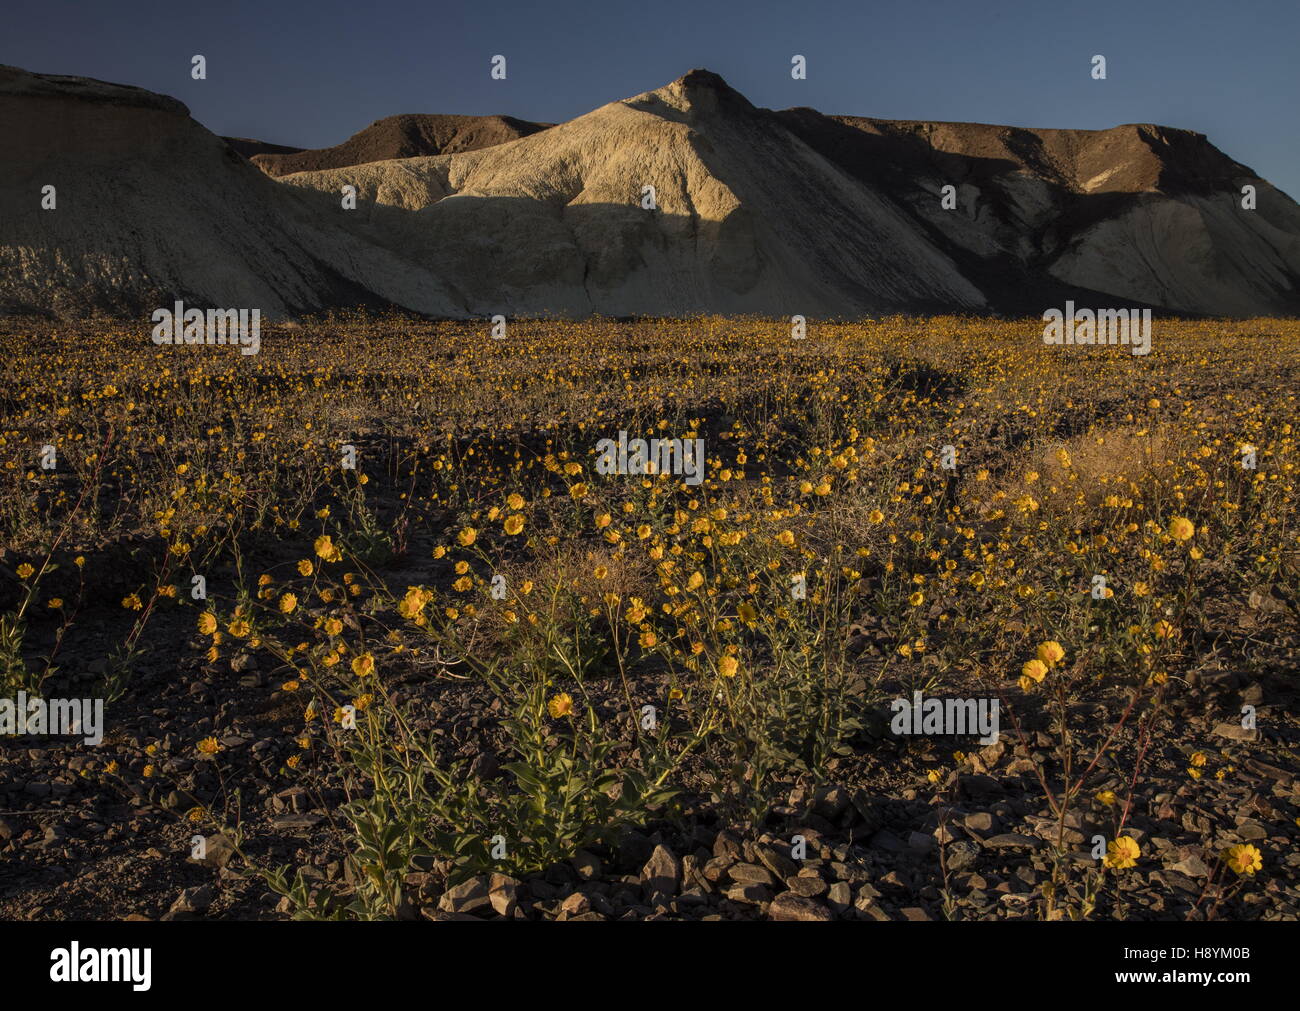 Wüste Sonnenblumen- oder Wüste gold, Geraea Canescens, in Blüte massenhaft im Death Valley, März 2016. Kalifornien. Stockfoto